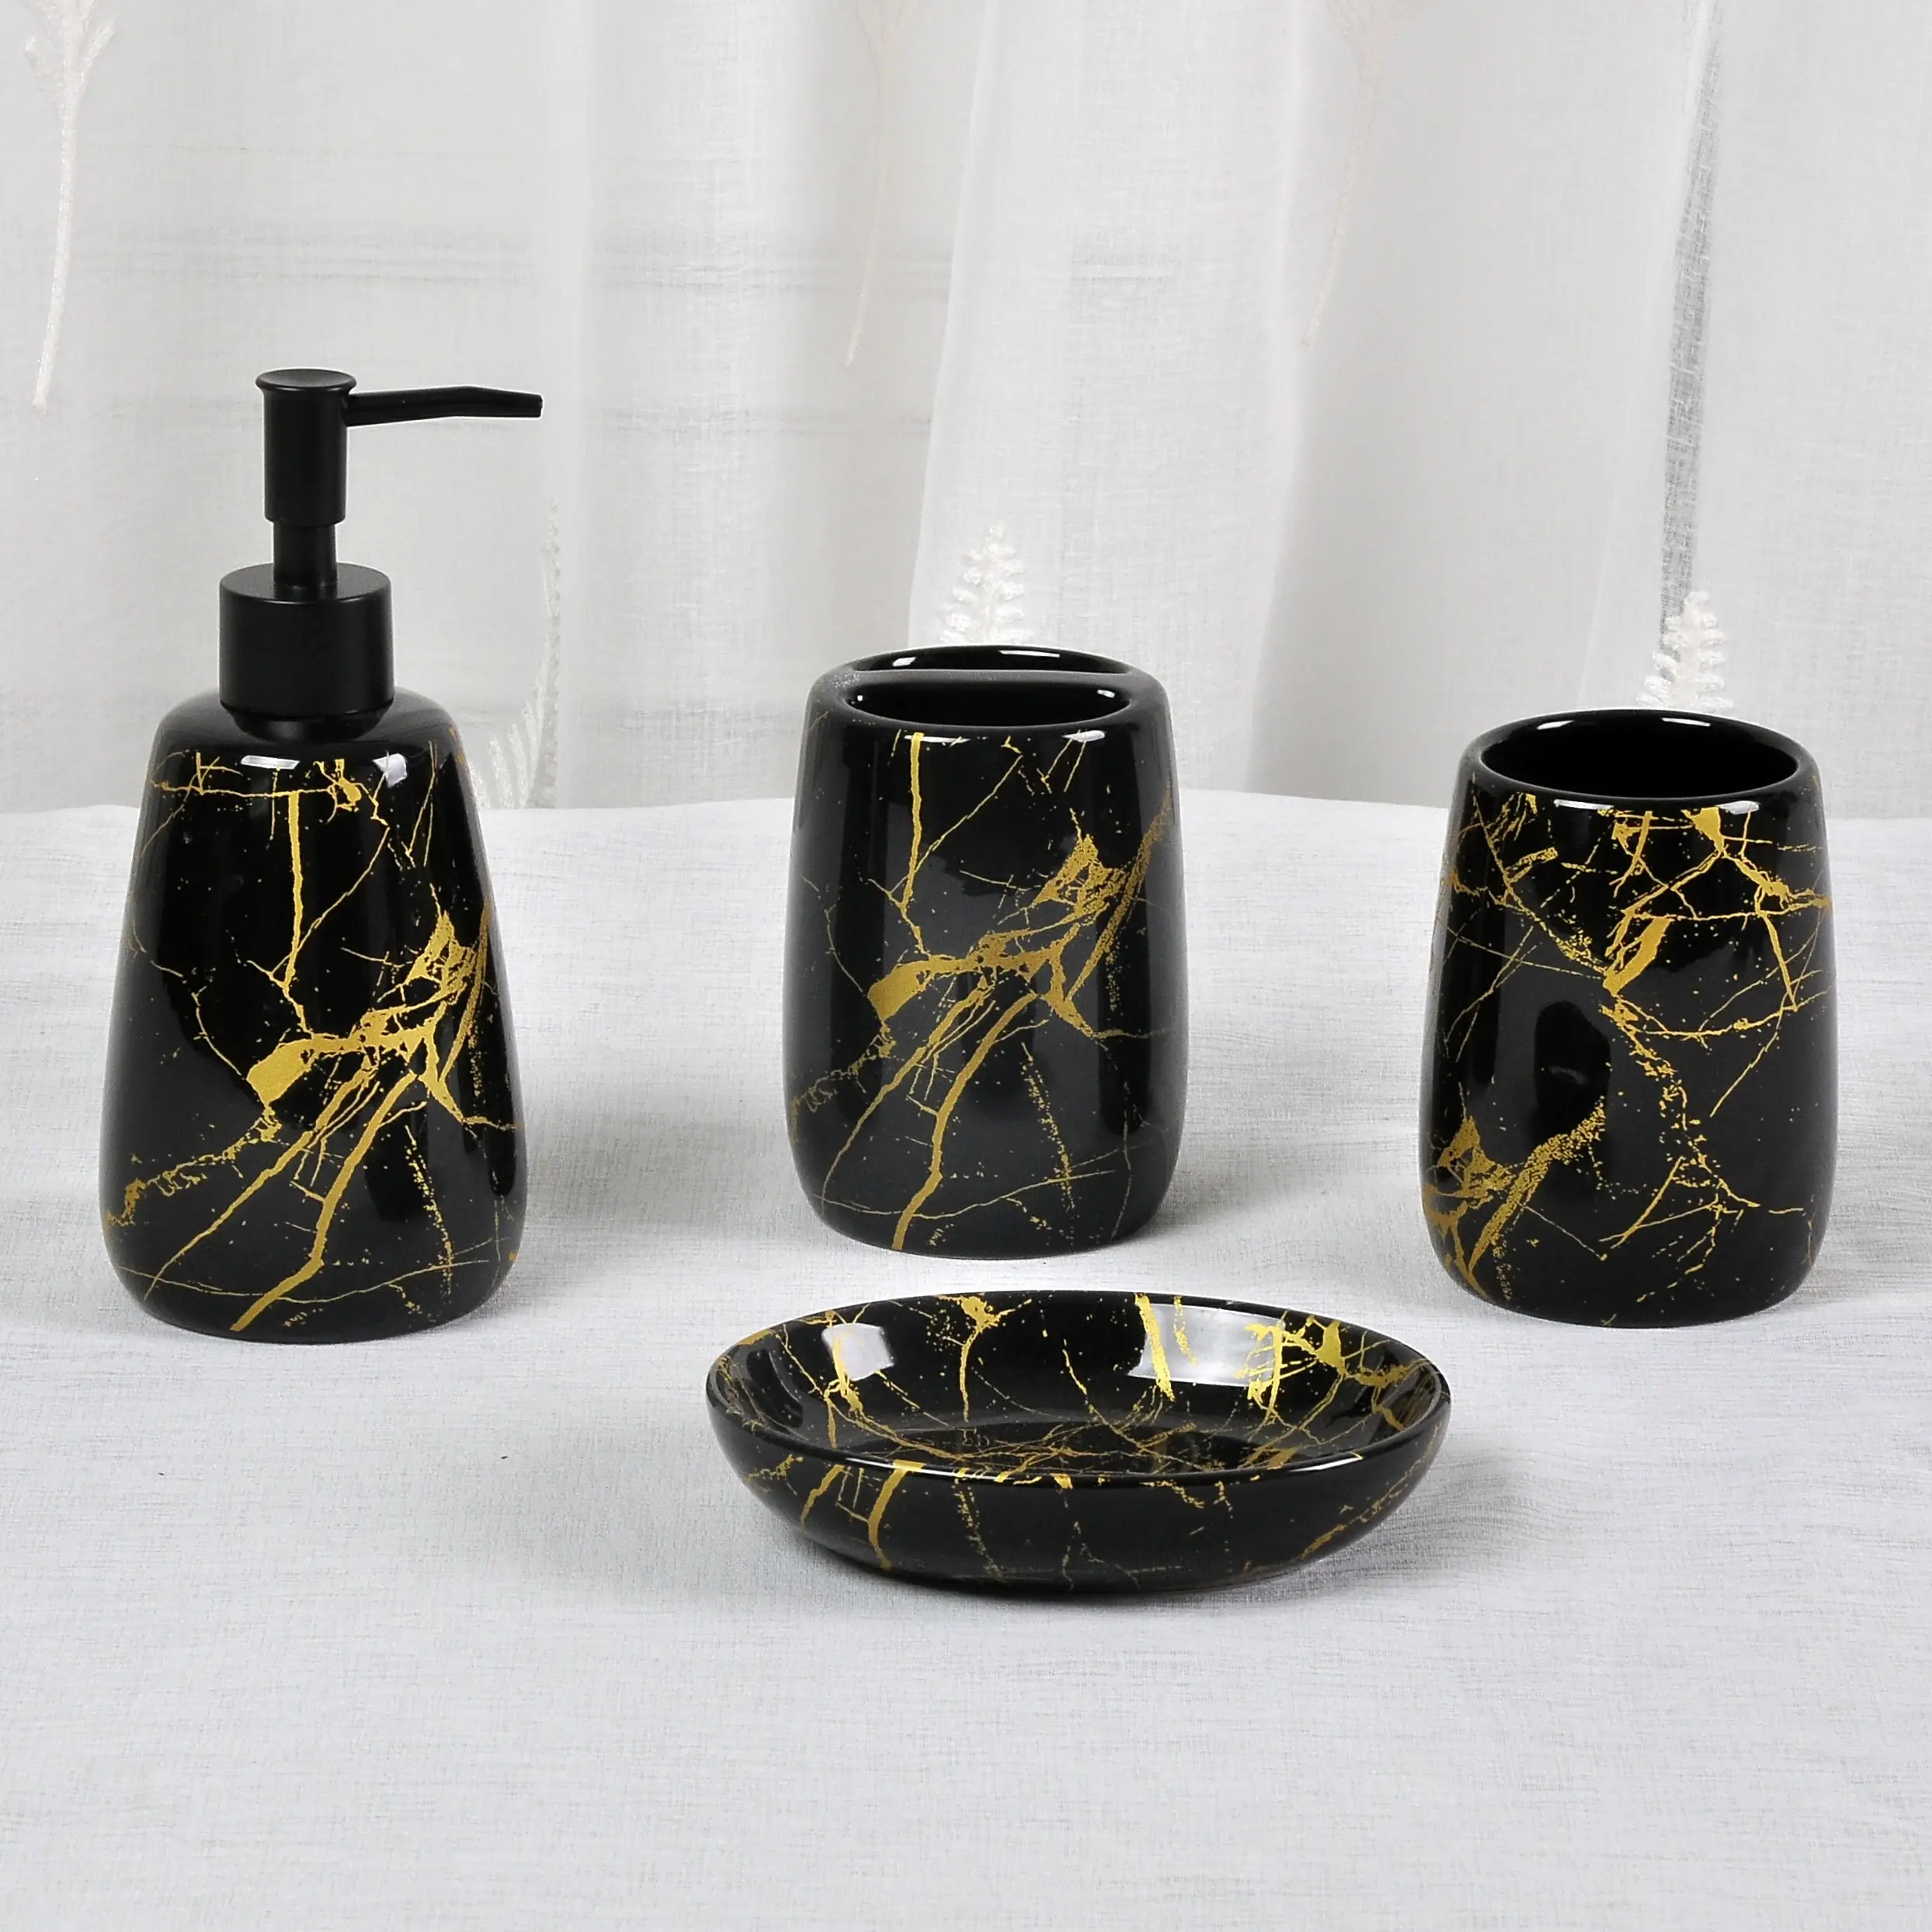 JIA SHUN-conjunto de accesorios de lujo para baño, diseño de mármol dorado y cerámica negra, 4 piezas